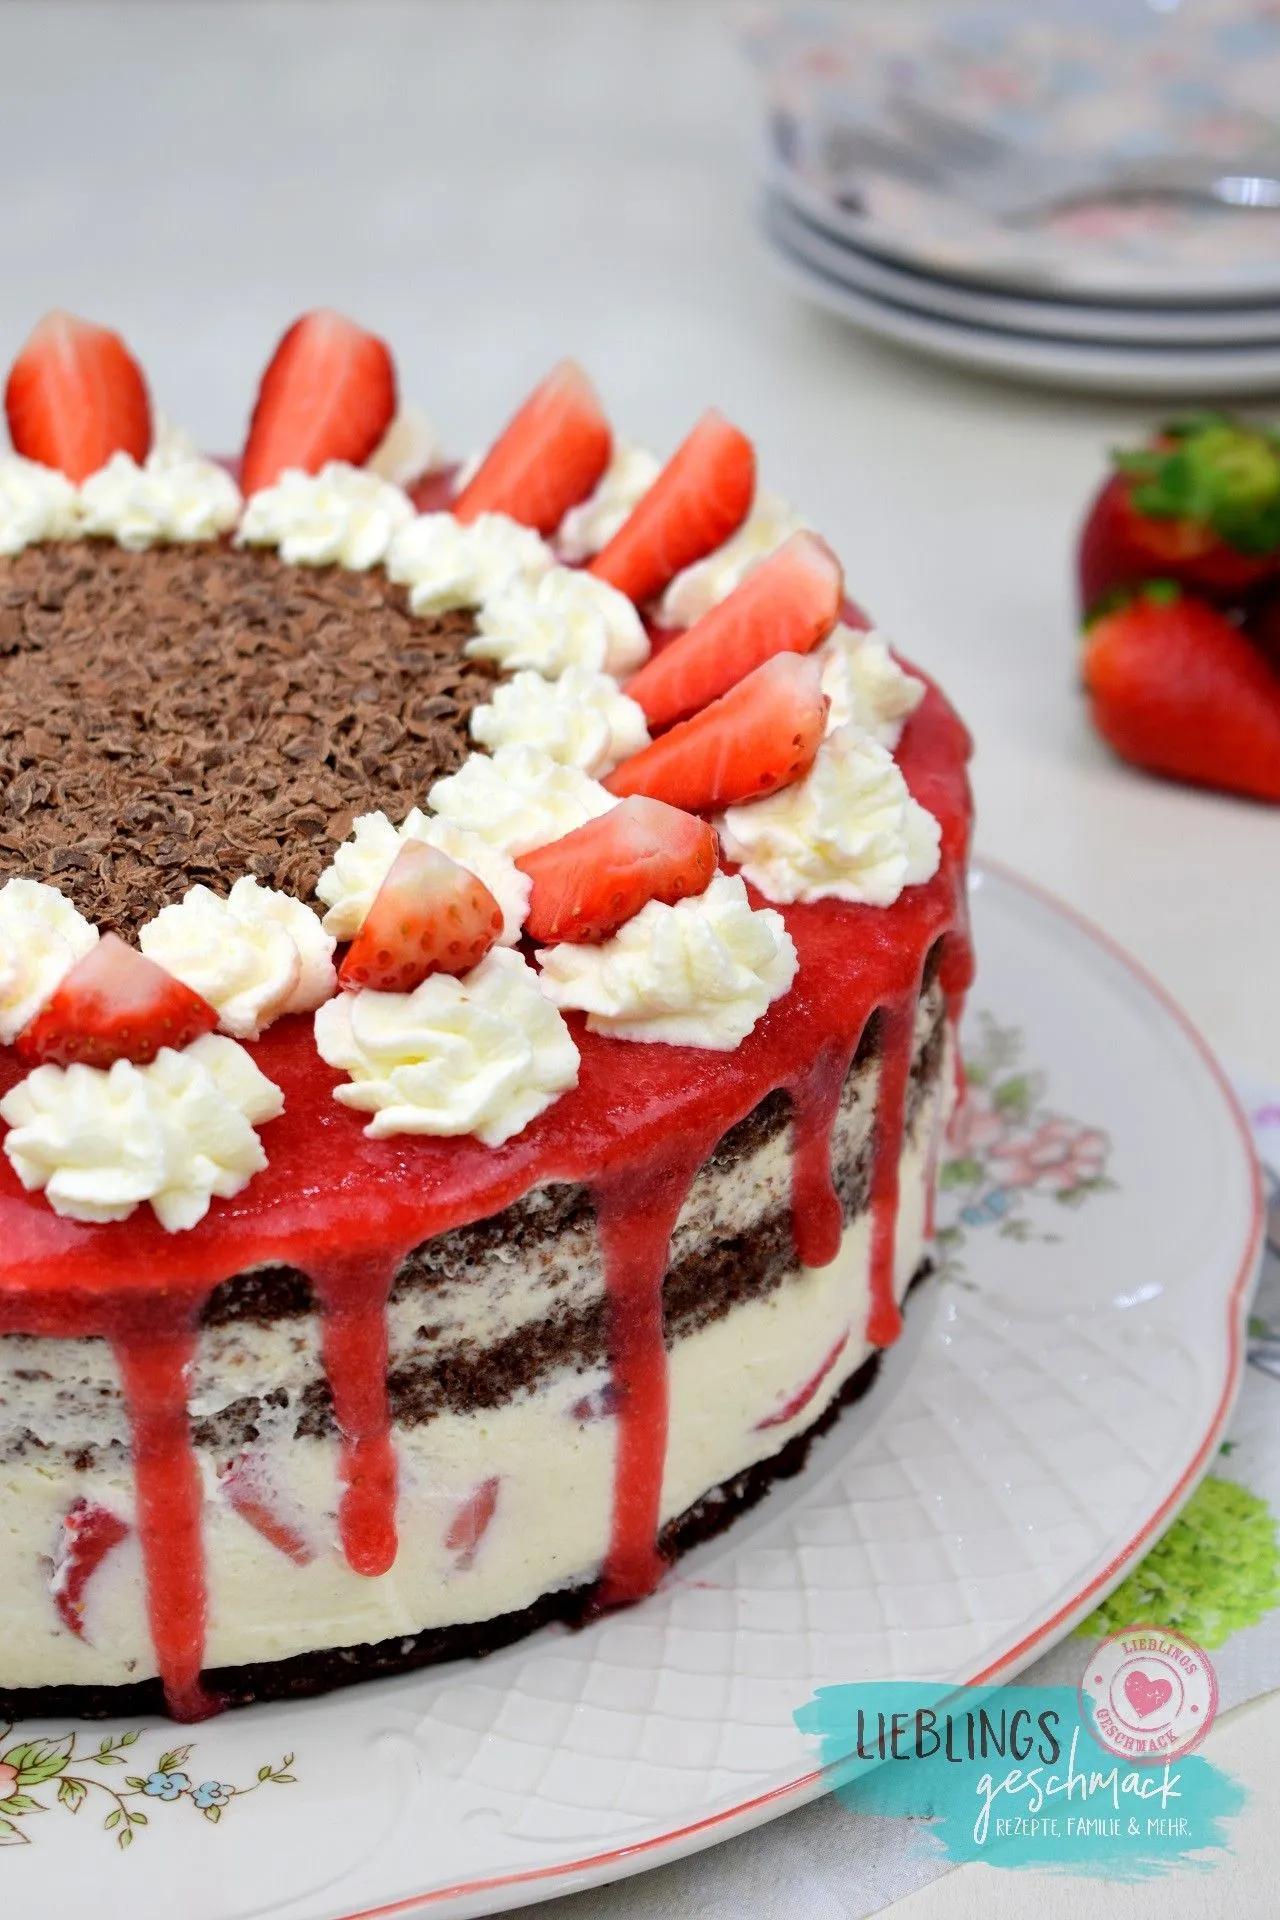 Ein traum aus erdbeeren und sahne schwarzwÄlder erdbeer torte – Artofit